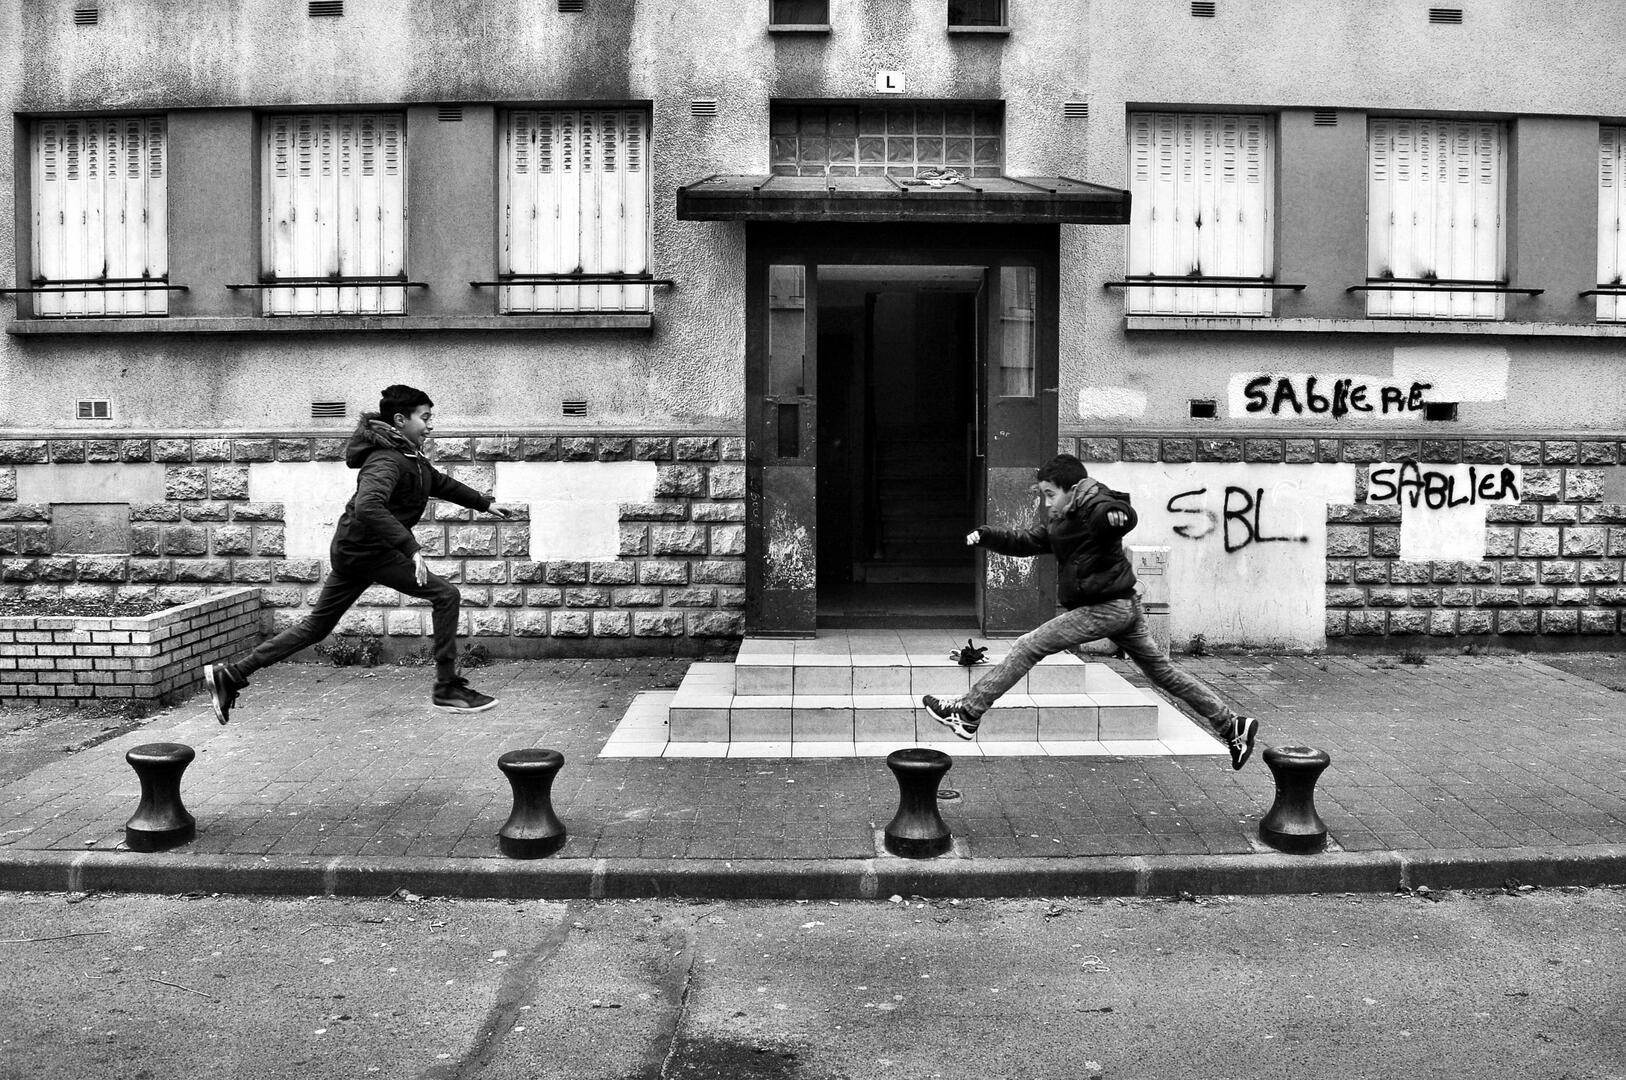 Schwaarz-weiß-Aufnahme zeigt zwei Jungen, die vor einem etwas heruntergekommenen Wohnhauses von Poller zu Poller springen